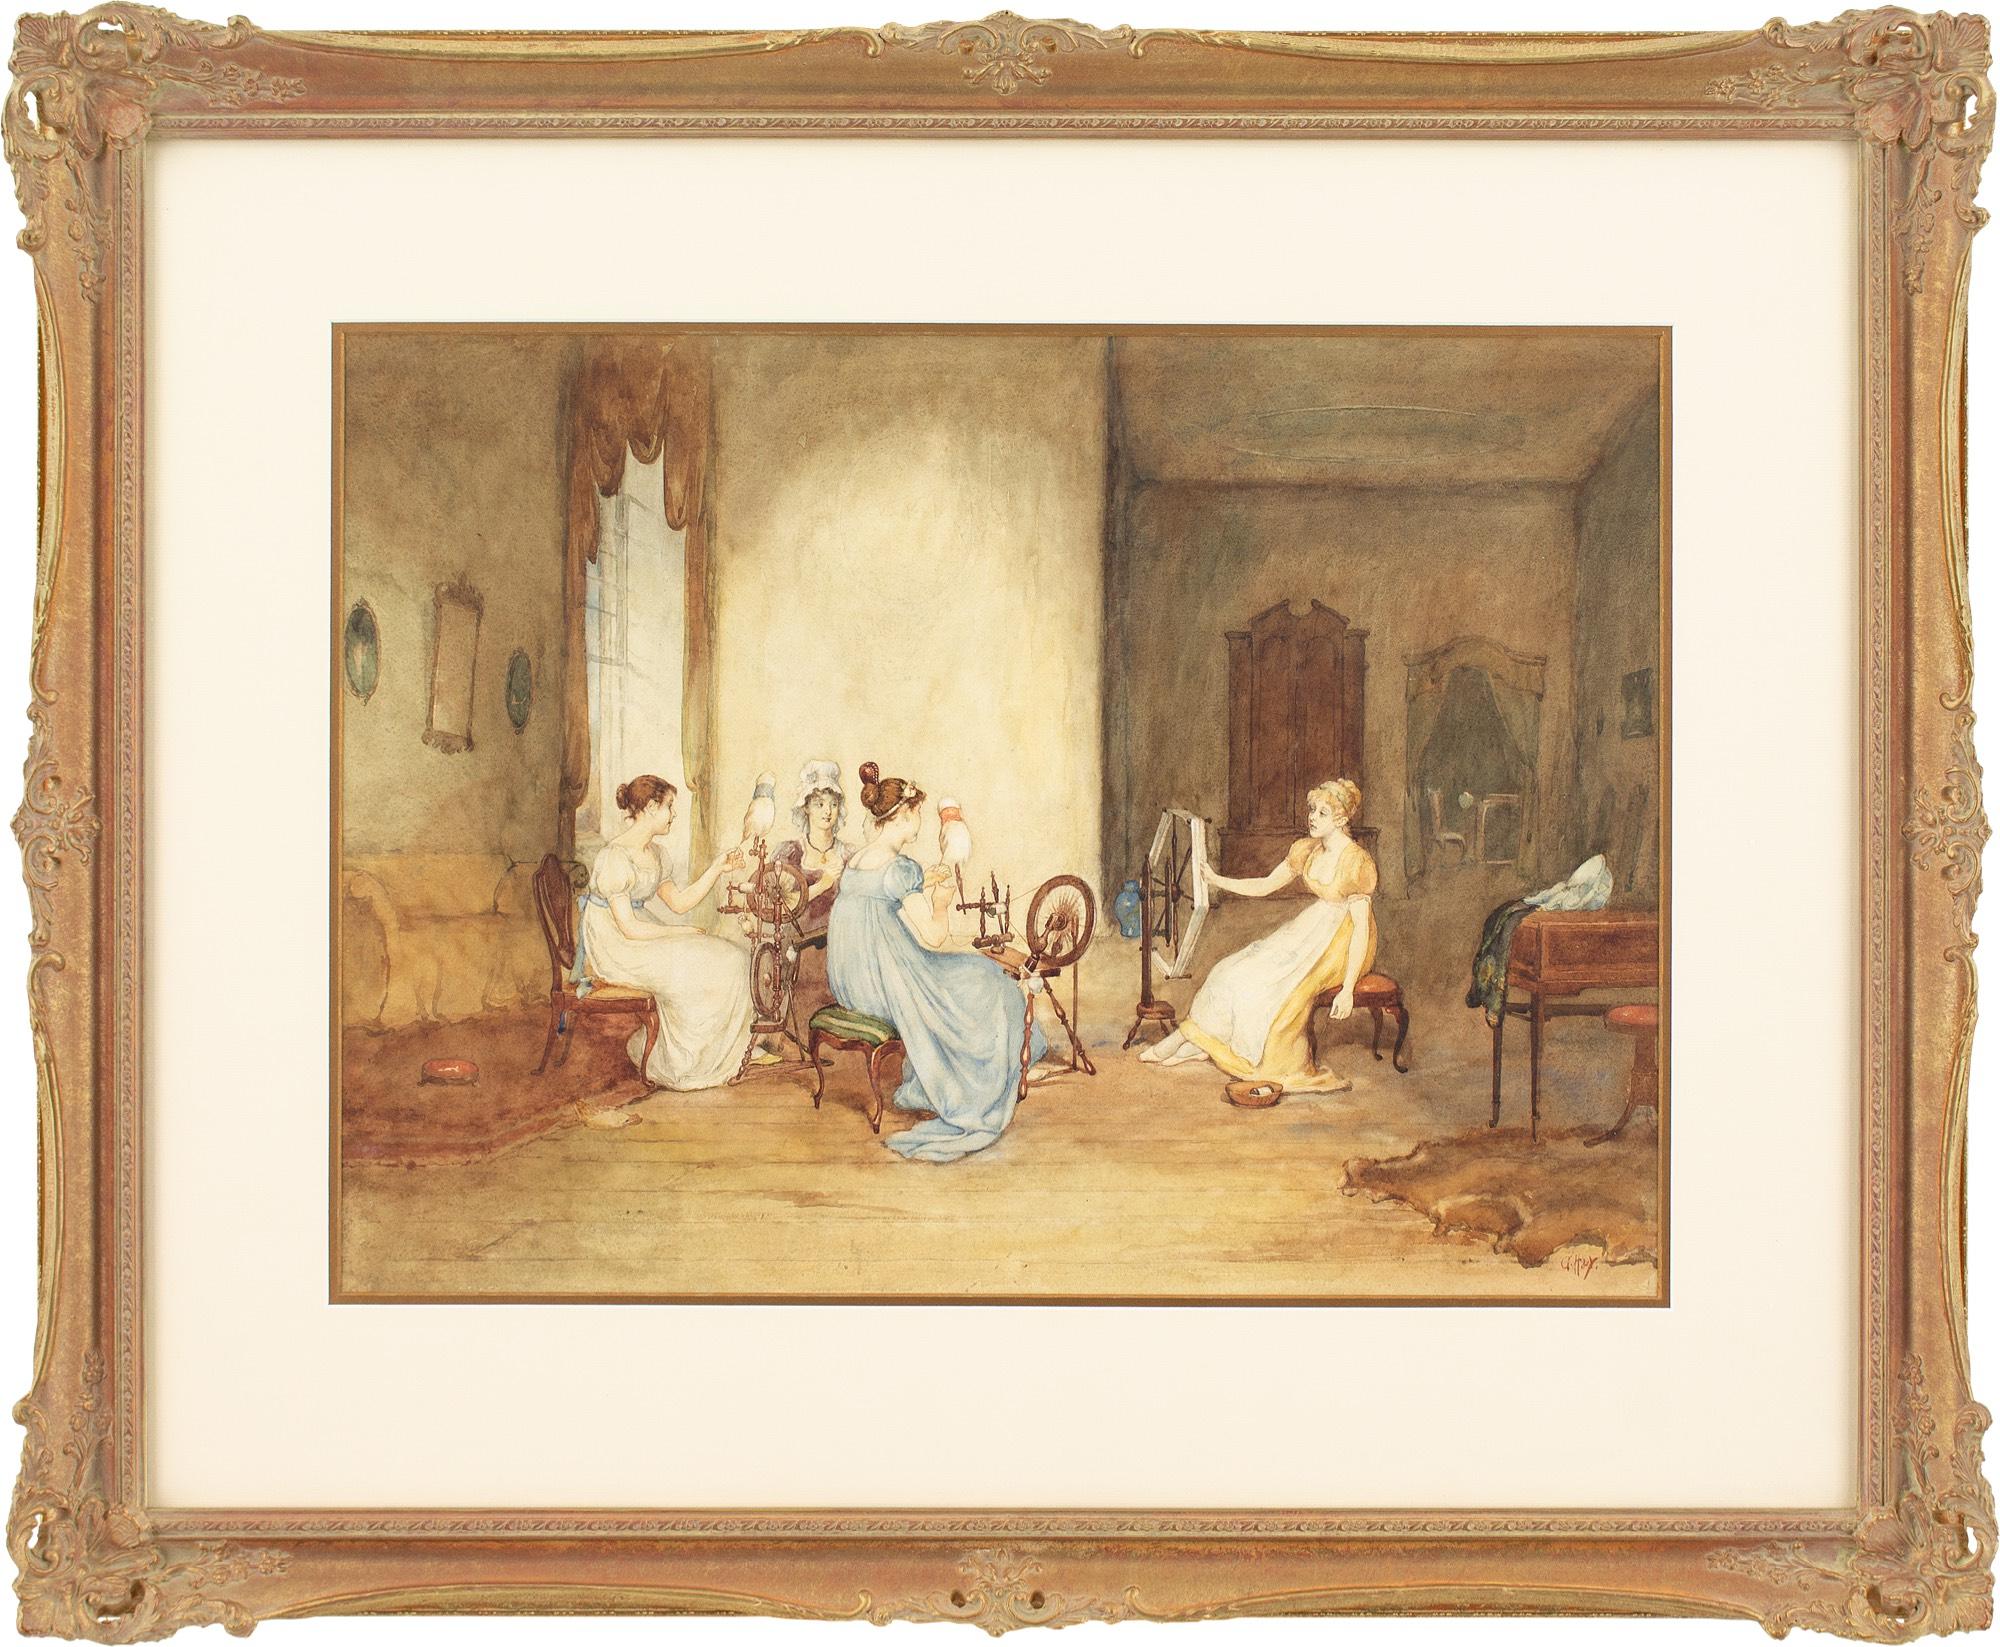 Dieses Aquarell des schottischen Künstlers George H. Hay RSA (1831-1912) aus dem späten 19. Jahrhundert zeigt vier junge Damen in der Kleidung der 1820er Jahre, die in einem schlichten Innenraum Wolle spinnen.

George H Hay RSA war ein Figurenmaler,